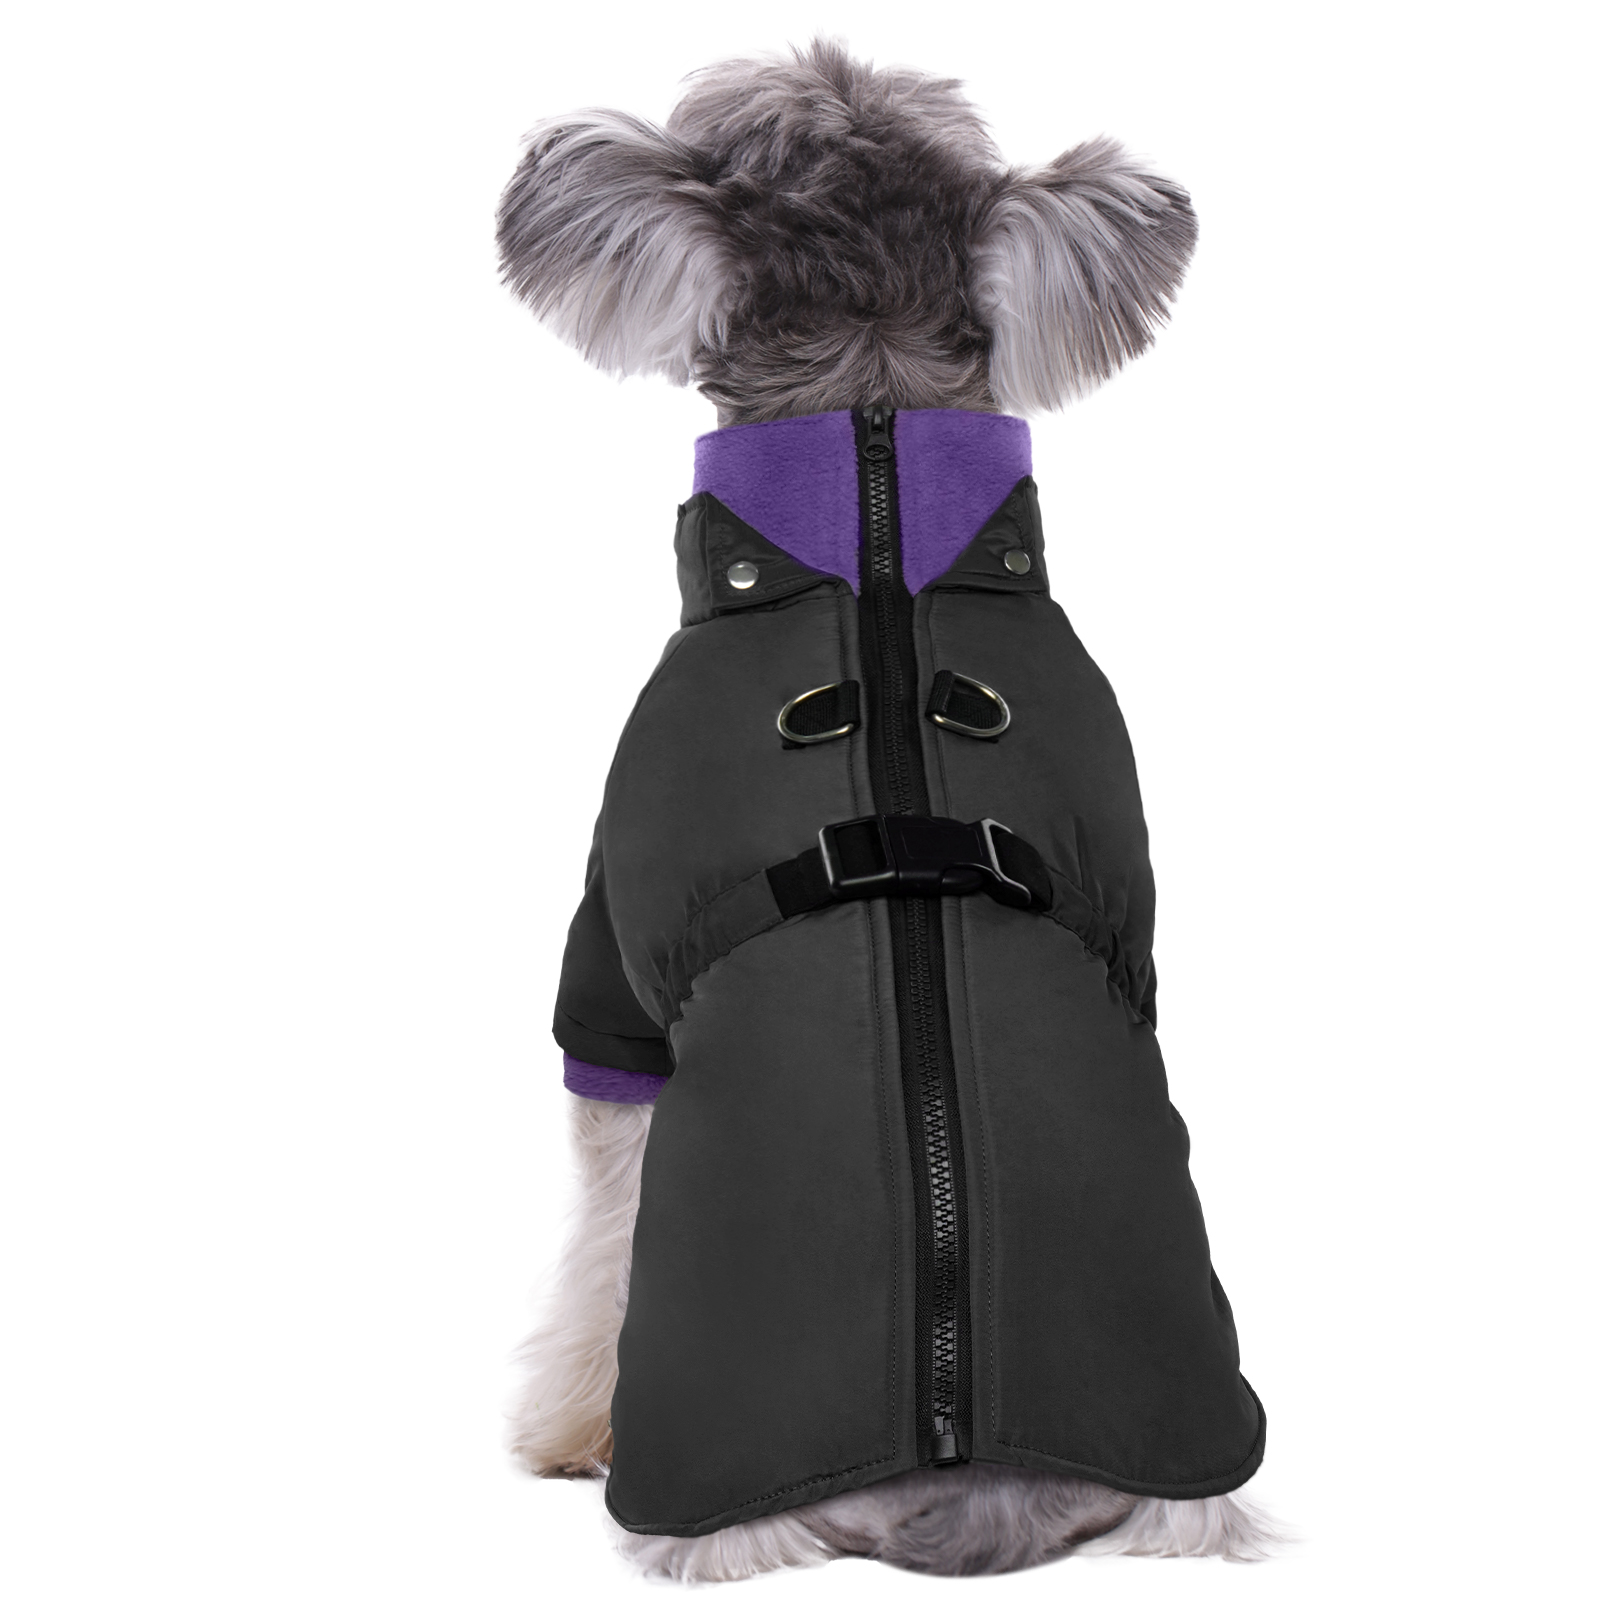 Kuoser Dog Winter Coat Windproof Warm Dog Jacket Coat Weather Coat for ...